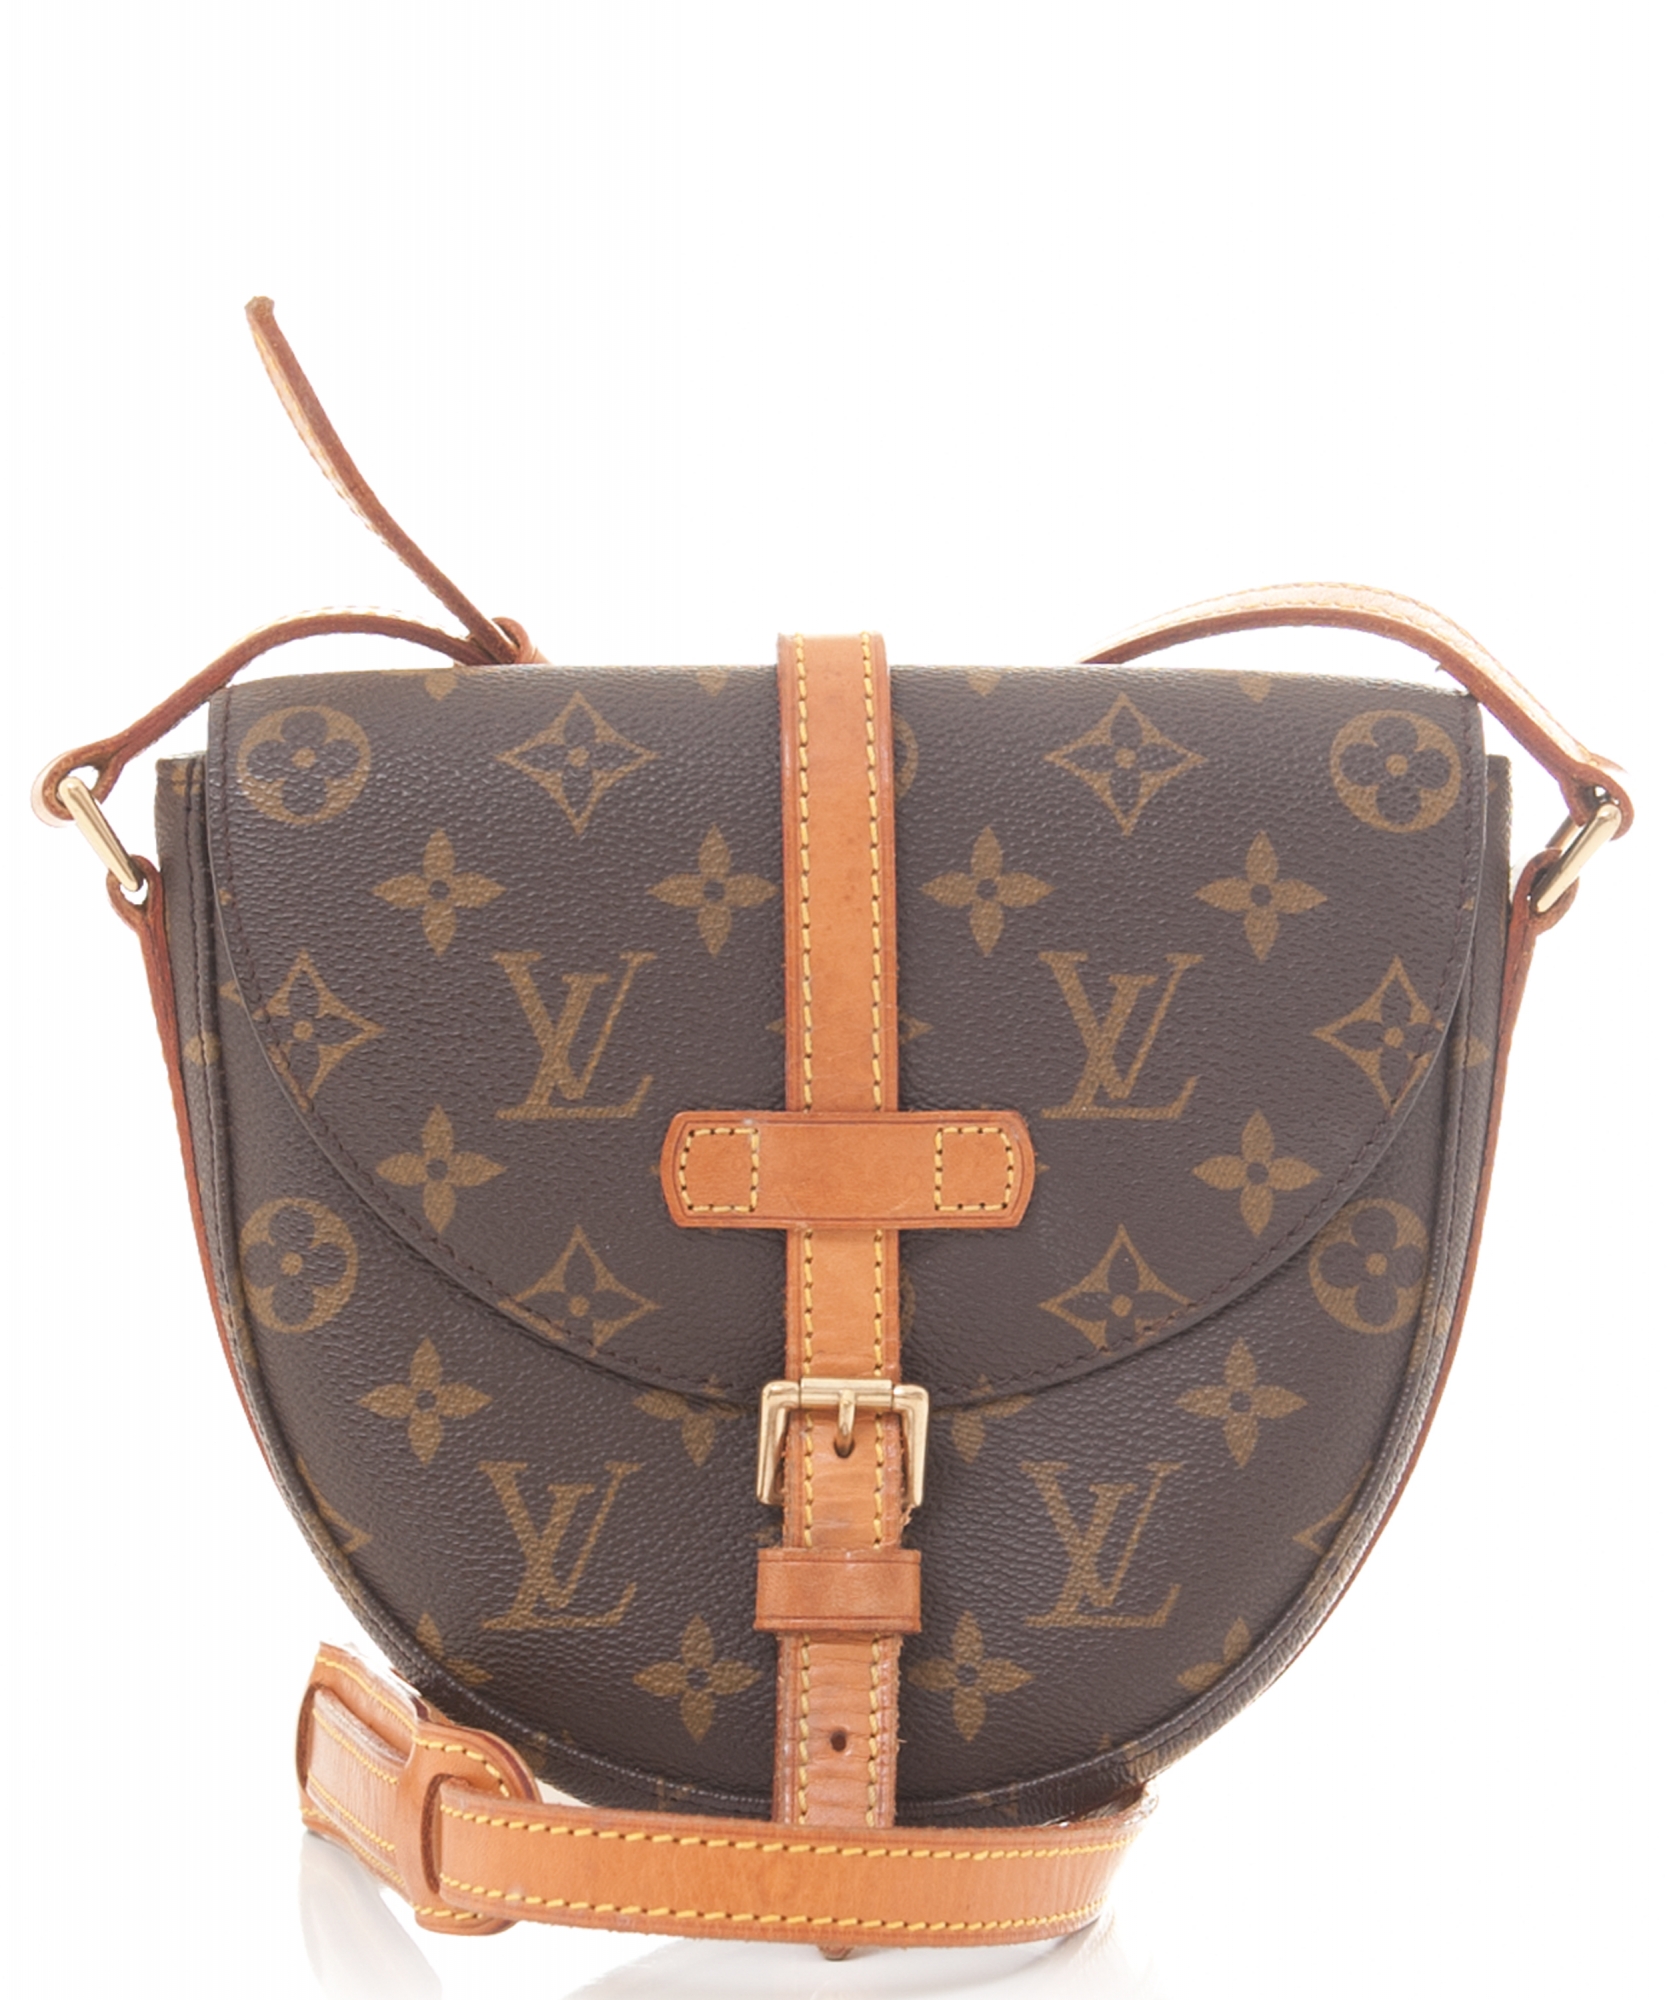 Louis Vuitton 'Chantilly' Shoulder Bag in Monogram Canvas - Louis